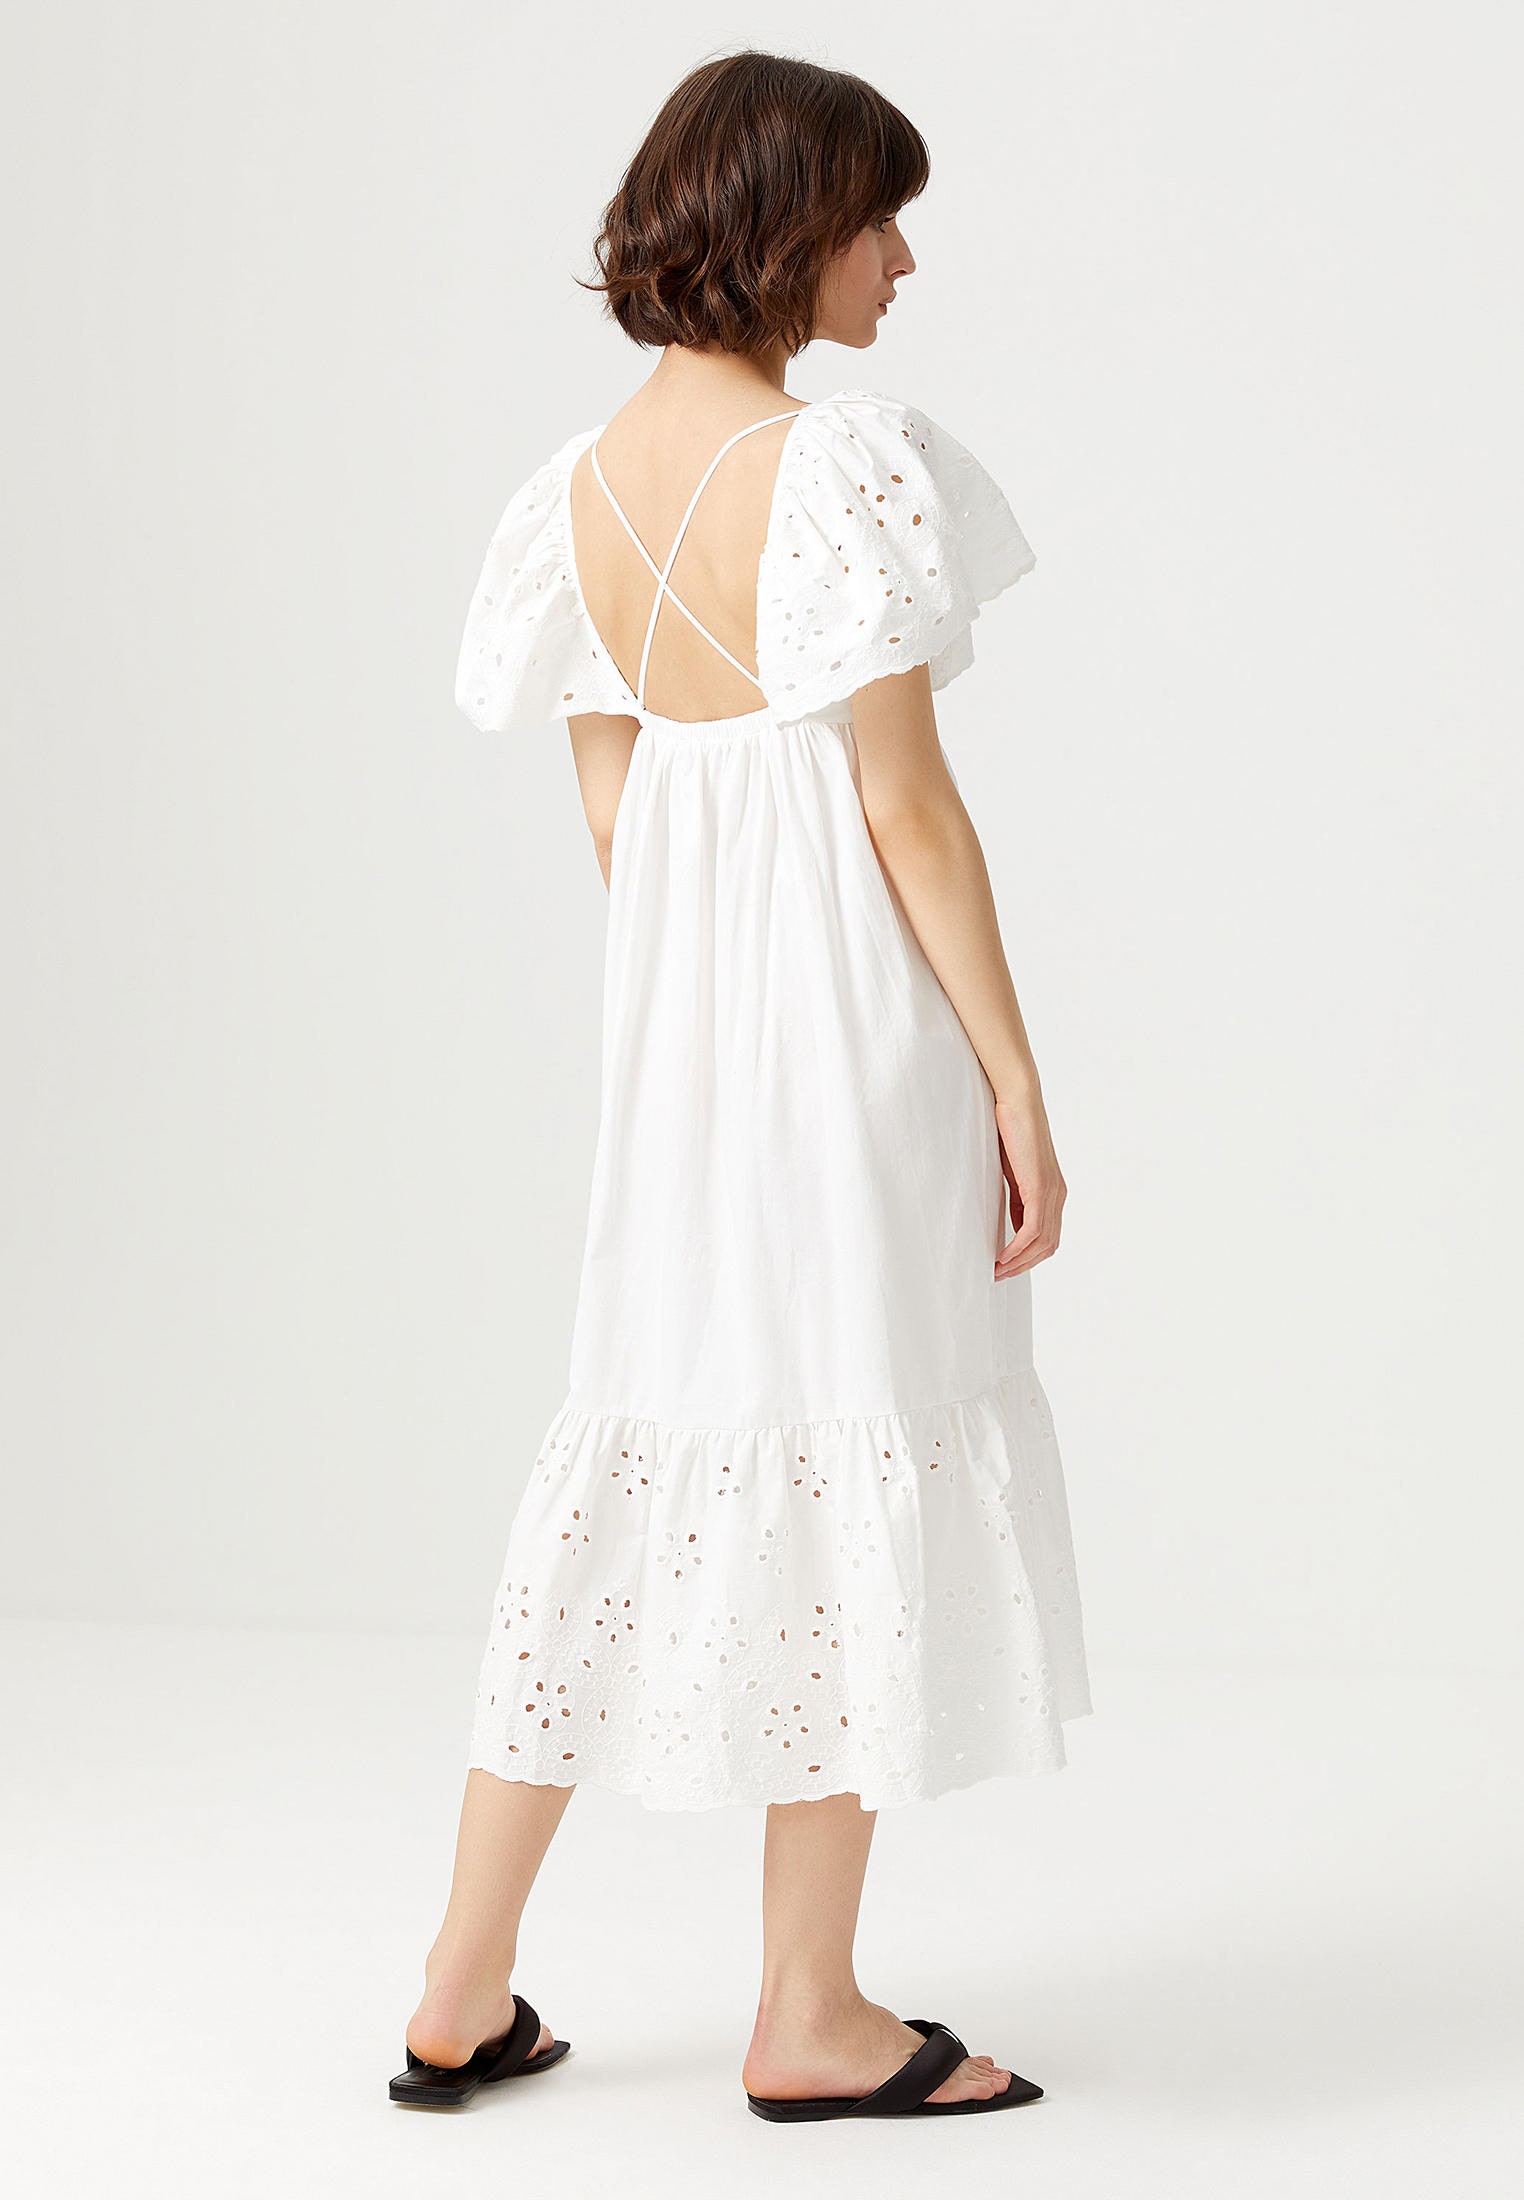 Идеальное летнее платье — с пышными рукавами и открытой спиной как у Вог Уильямс